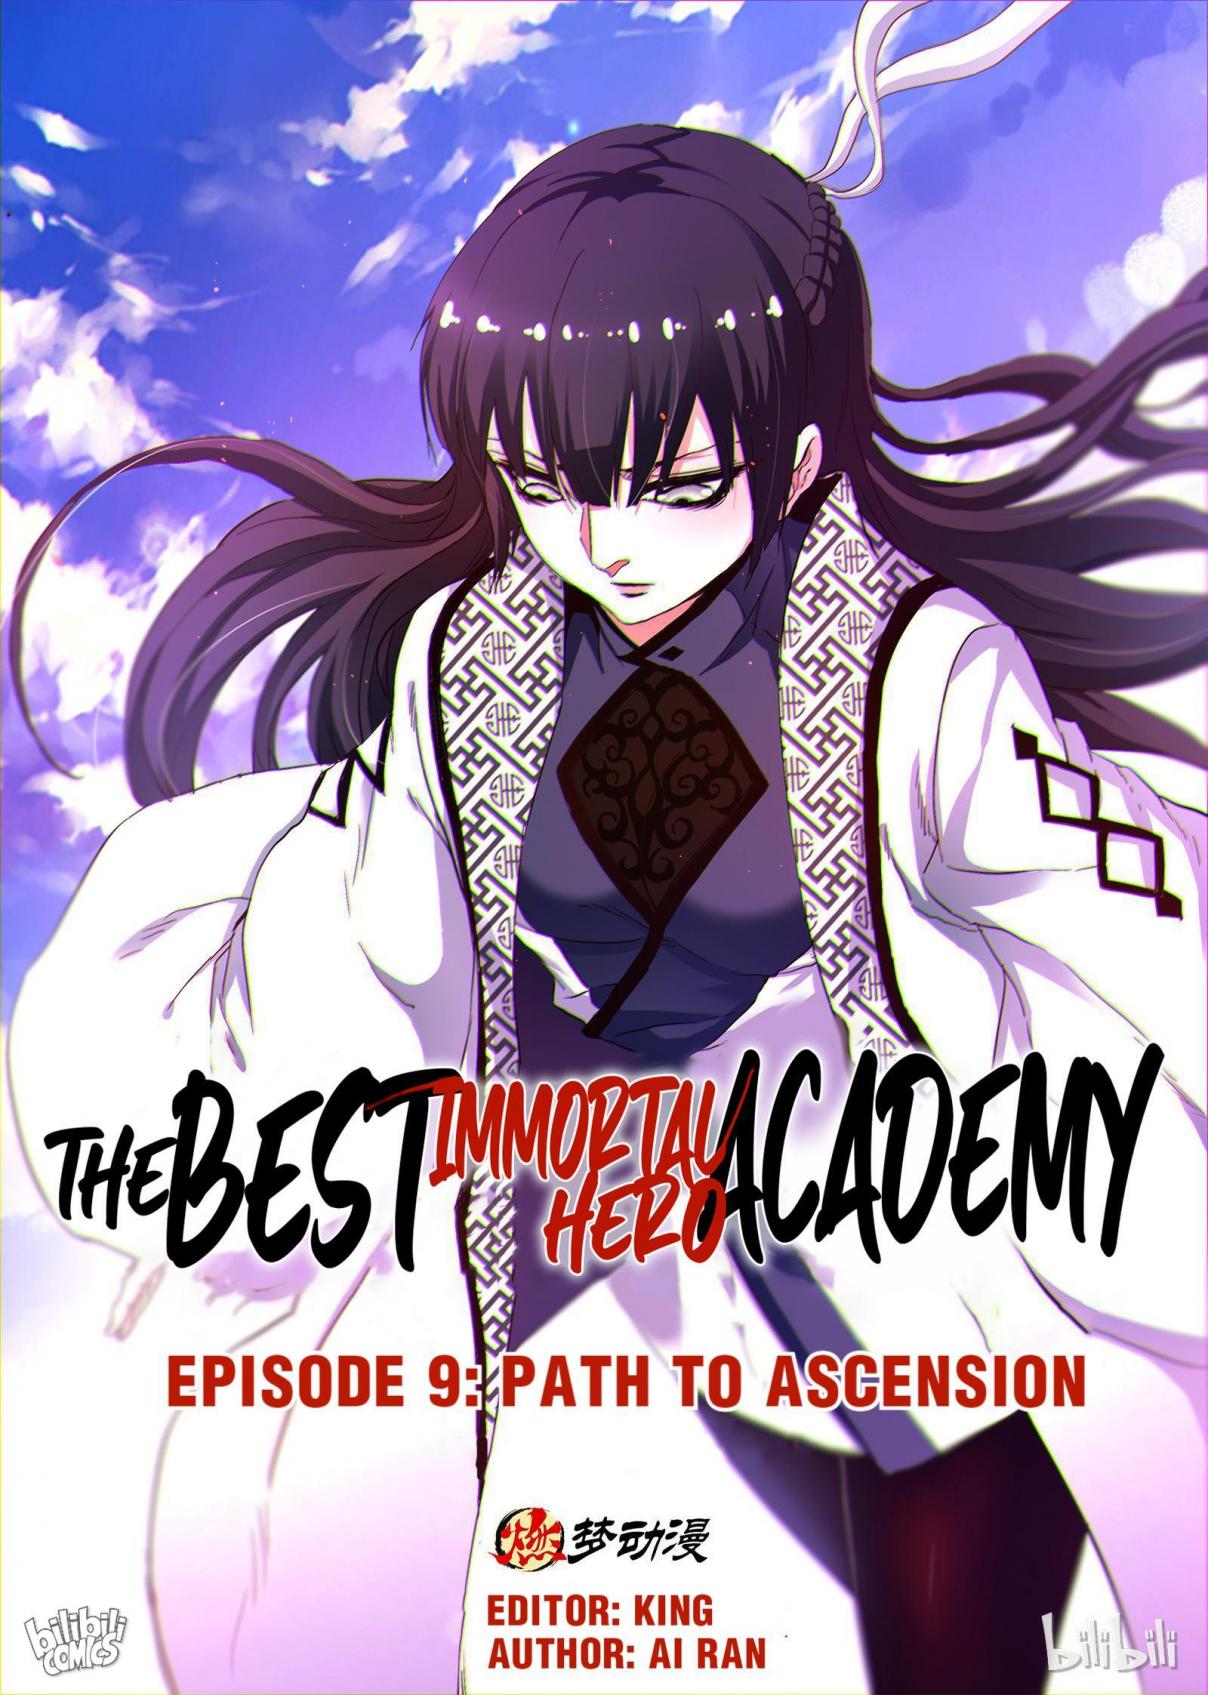 The Best Immortal Hero Academy 9